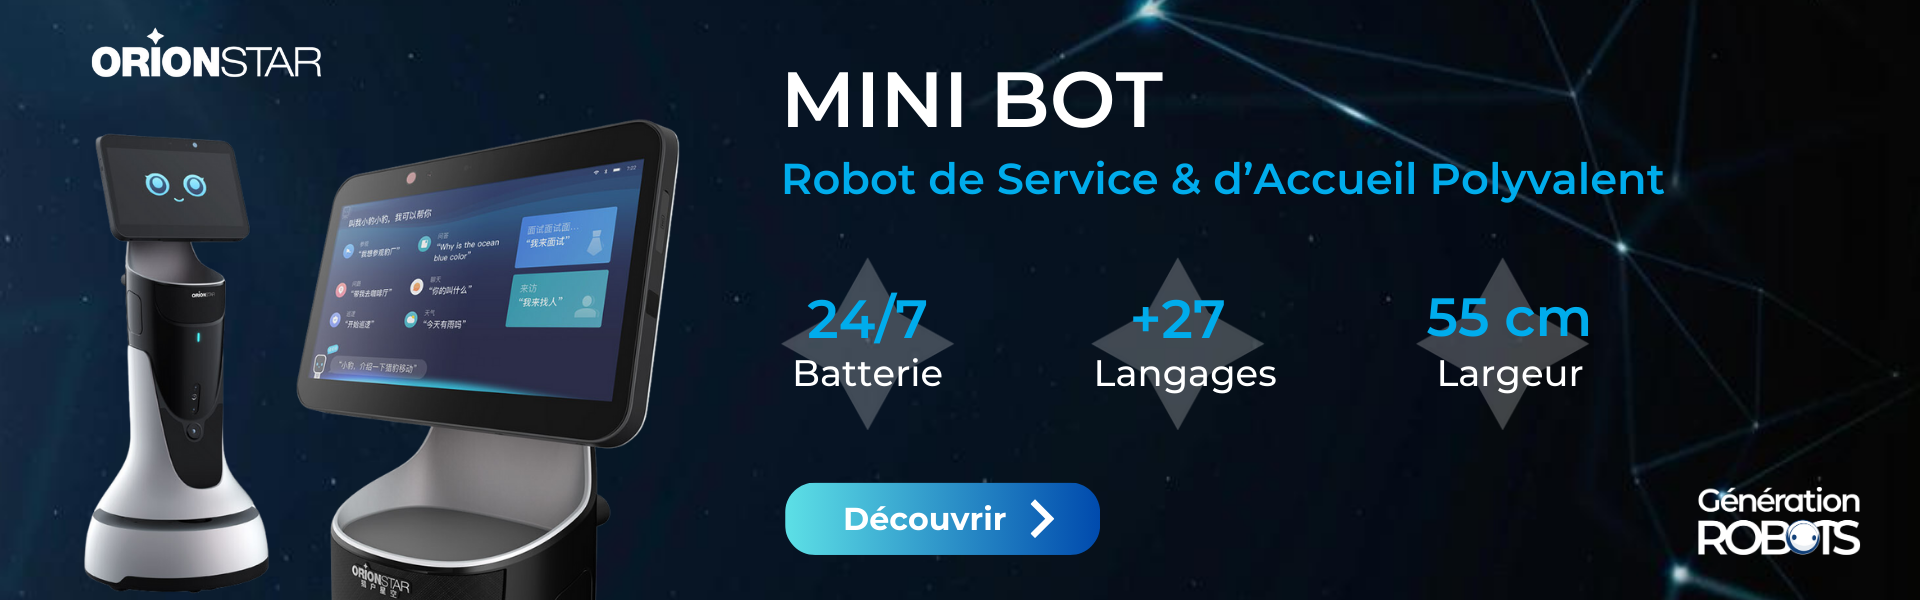 Bannière Mini Bot - OrionStar Robotics